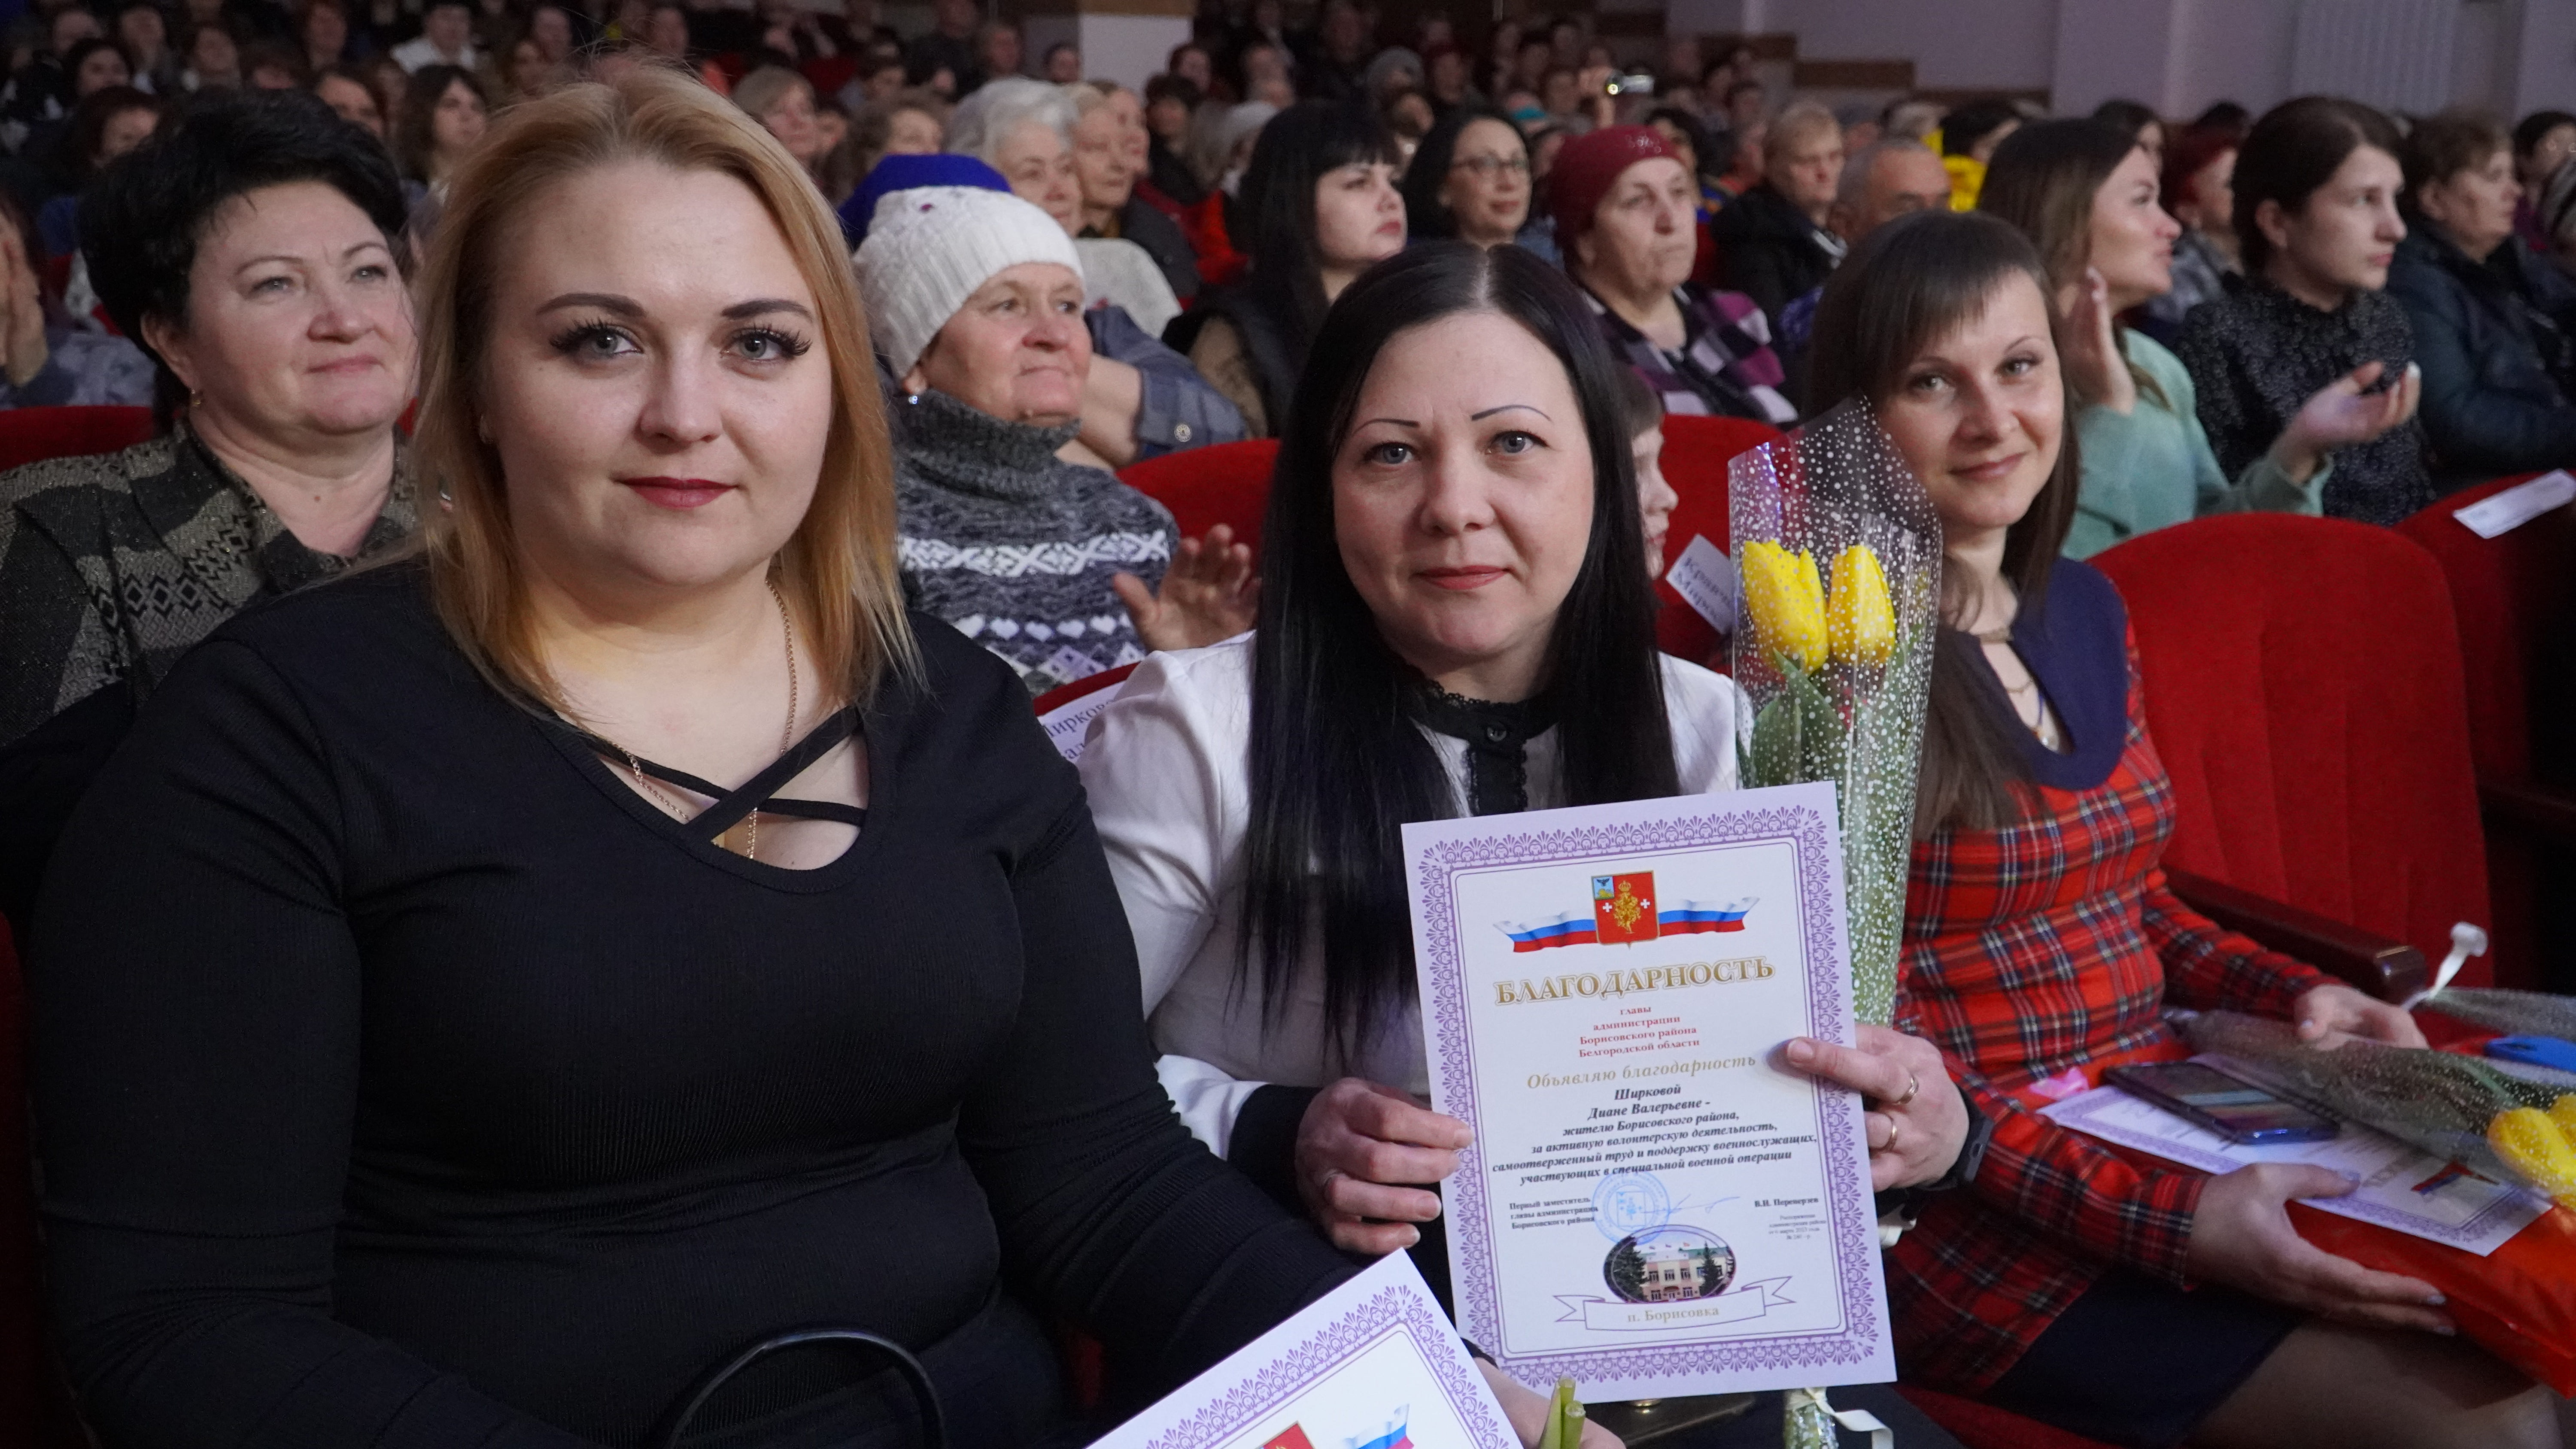 Исполнилось пять месяцев как в Борисовском районе открылся филиал Союза поддержки матерей и жён военнослужащих, принимающих участие в СВО.